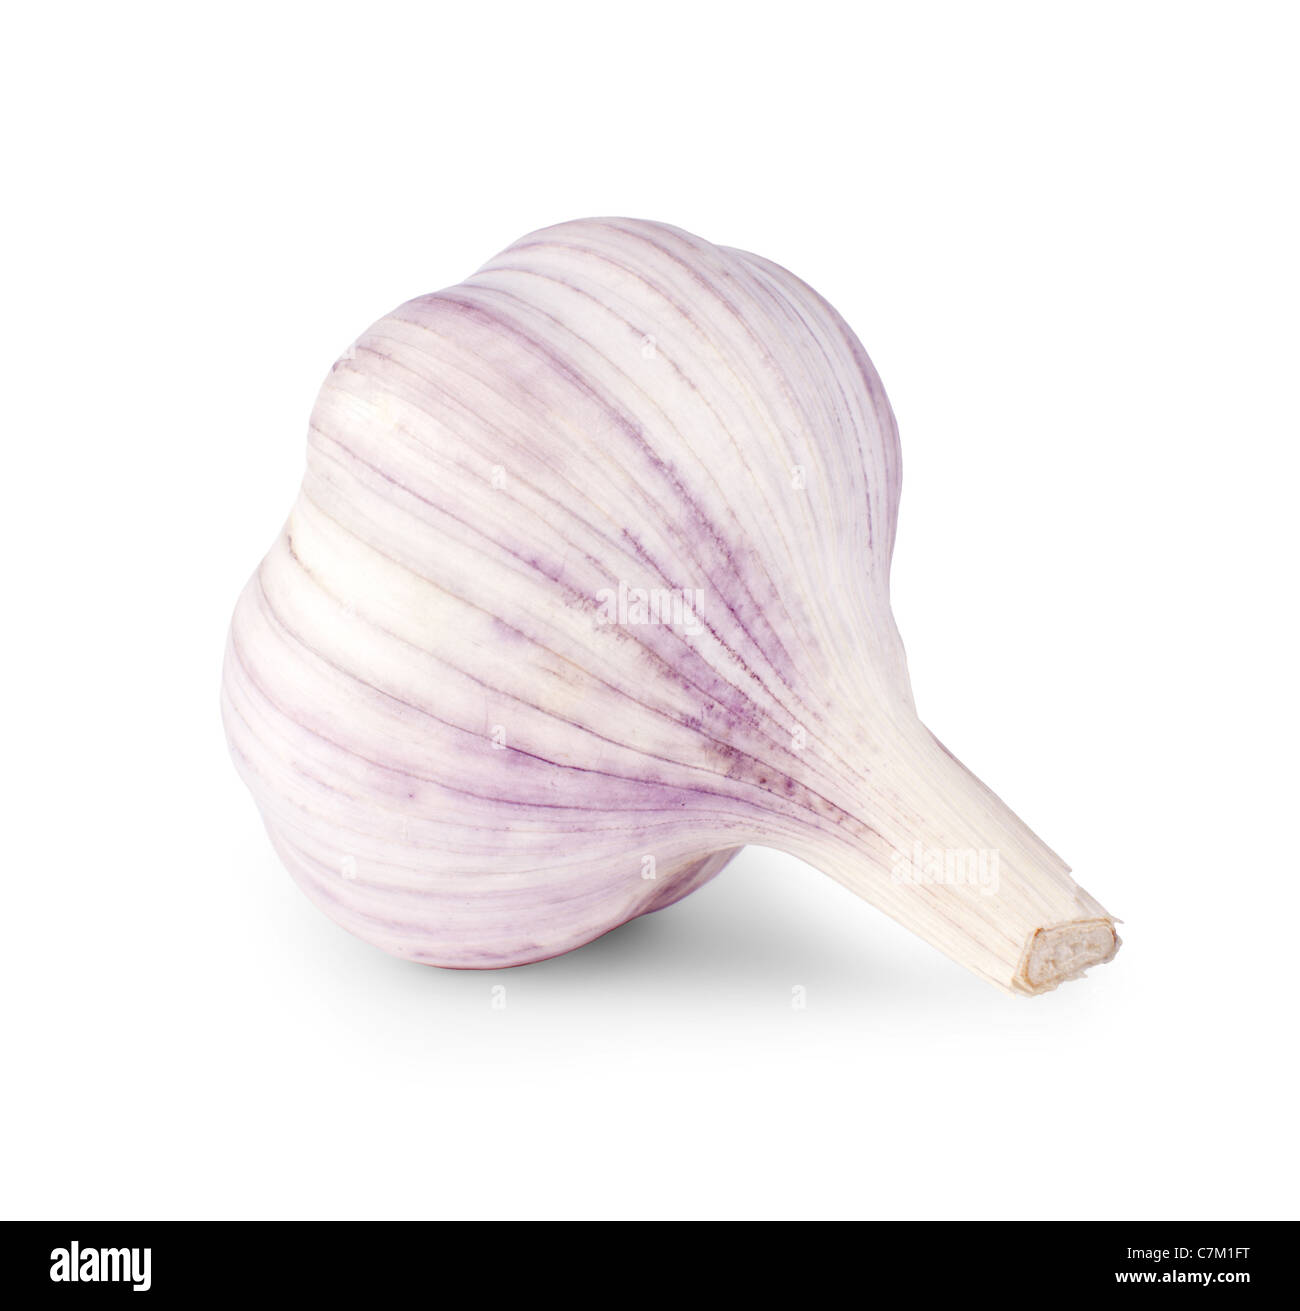 One garlic isolated on white background Stock Photo